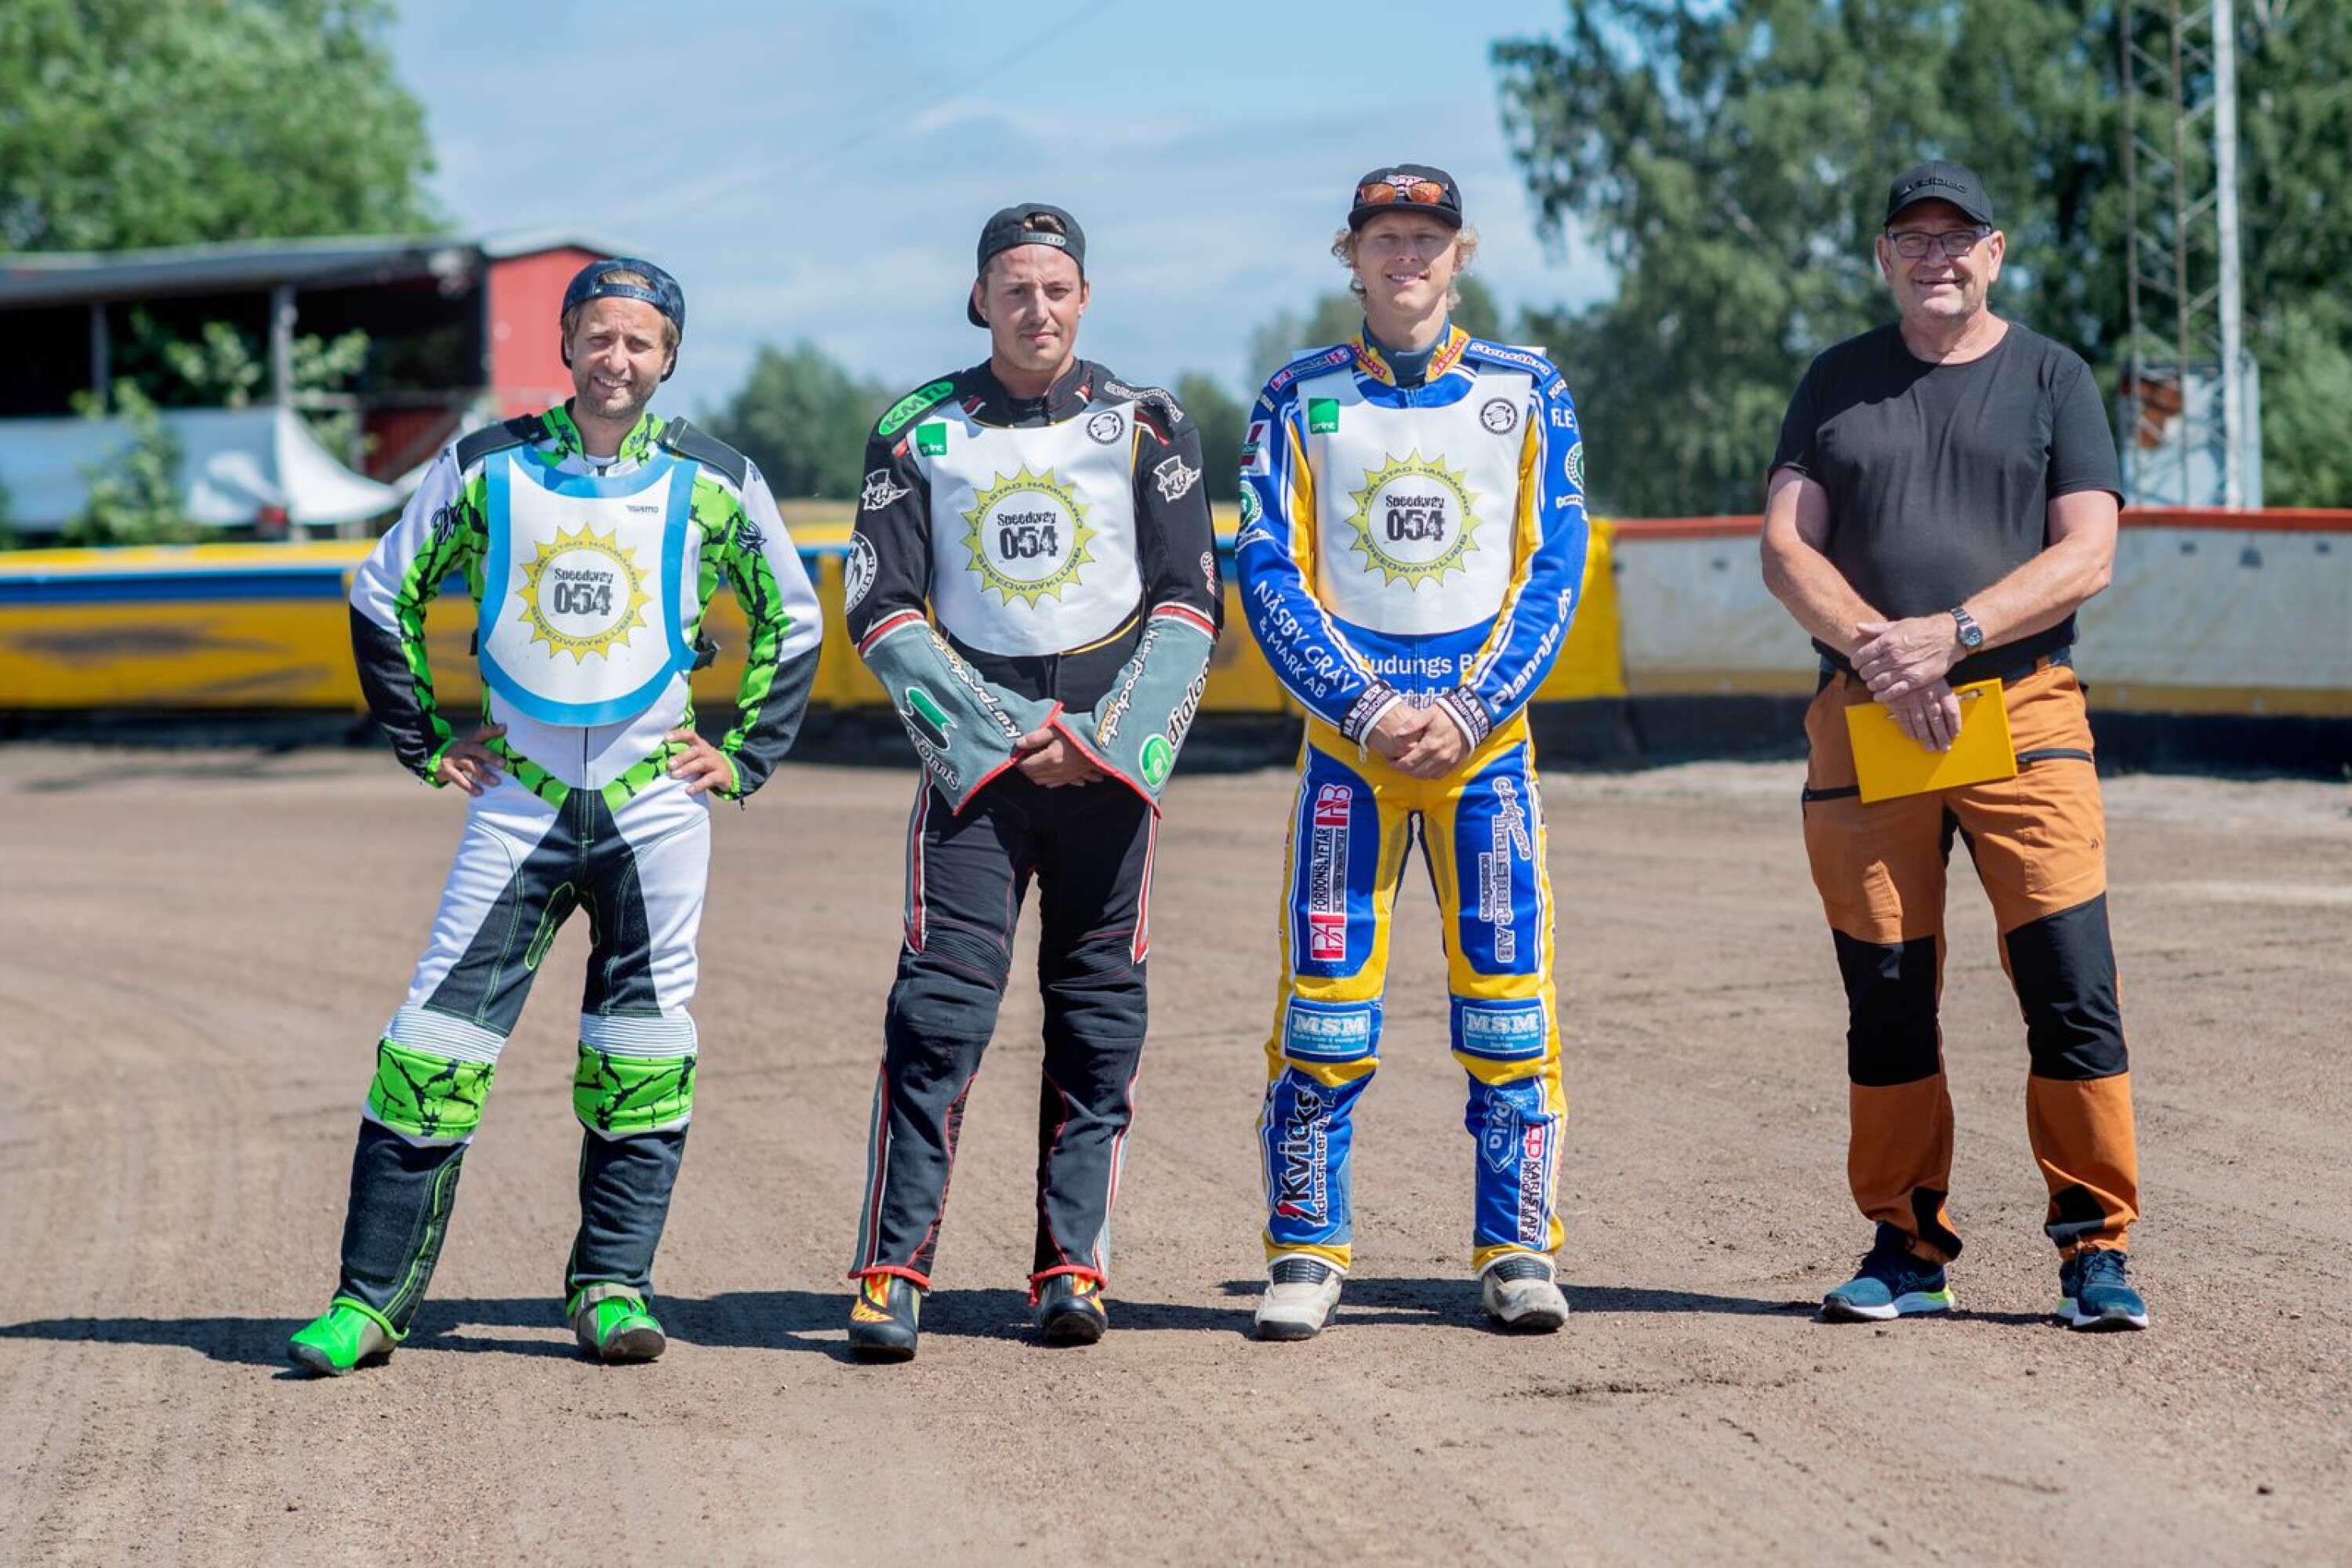 Ett glatt gäng från Karlstad/Hammarö speedwayklubb (Speedway054): Jeremia Thelaus, Adrian Bergqvist, Victor Palovaara och lagledare Stig Johansson.